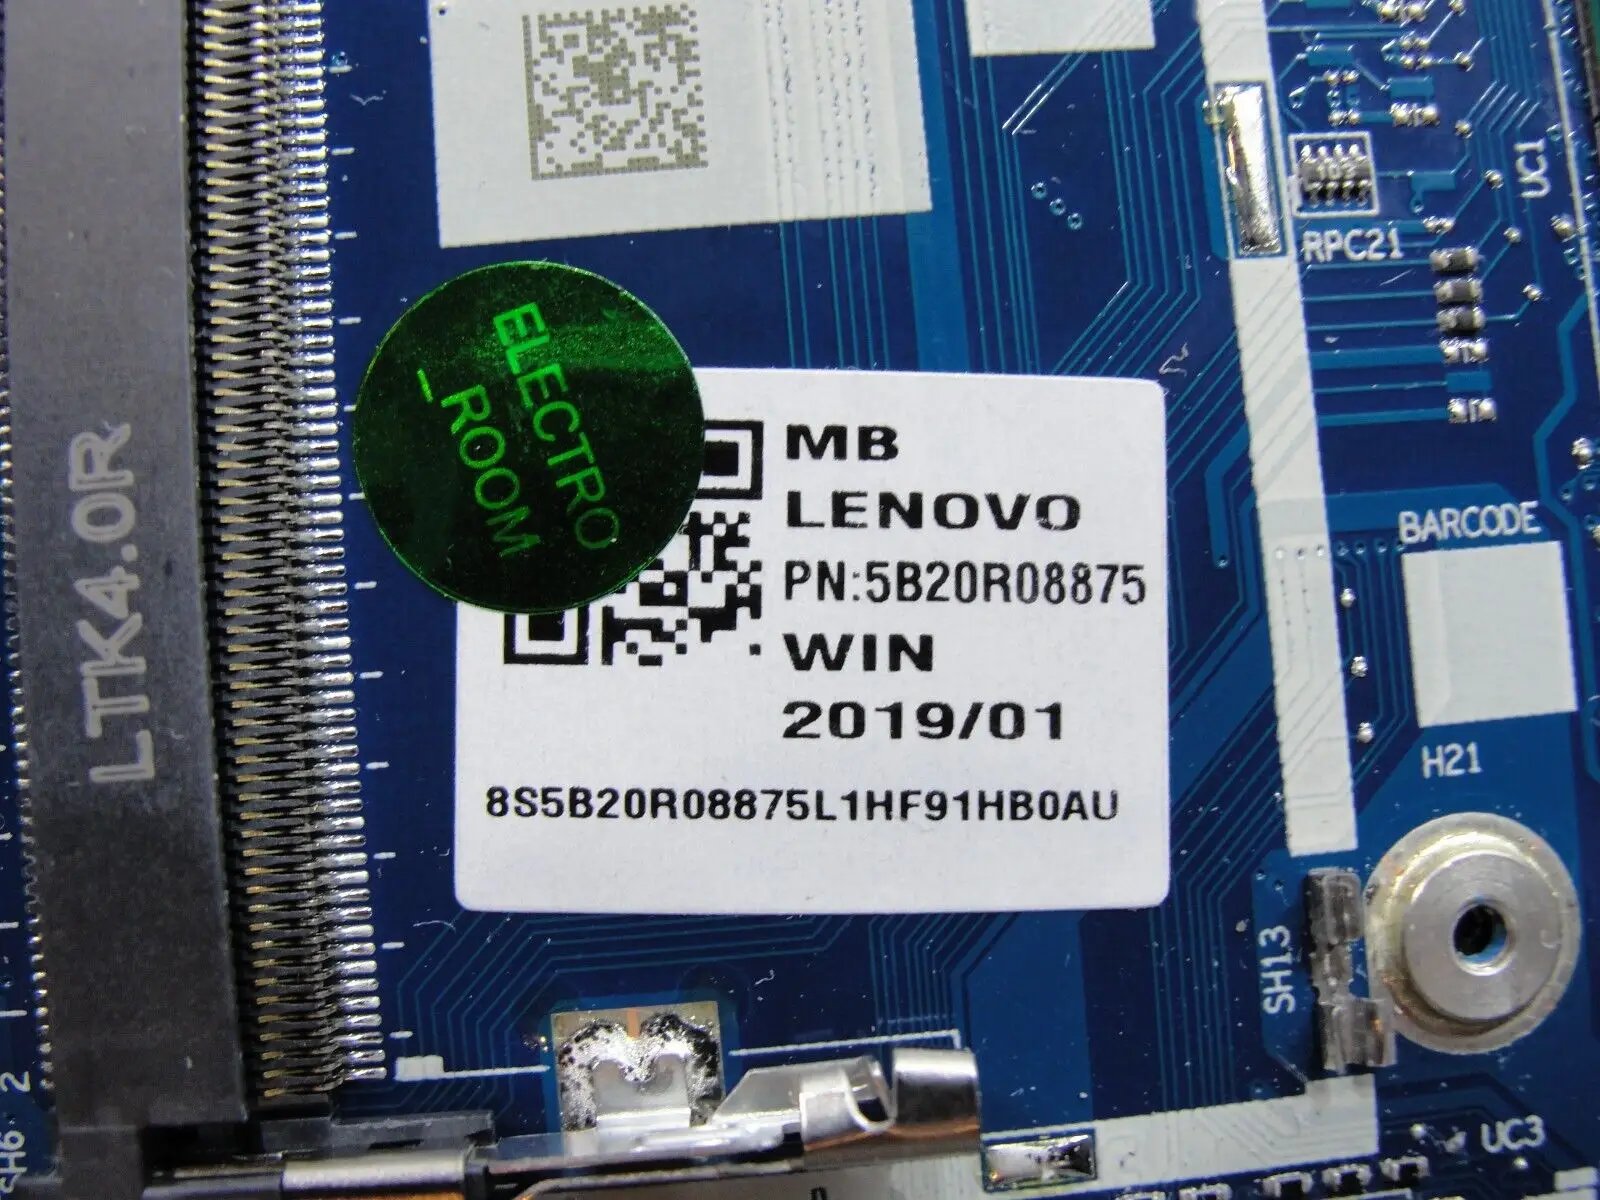 Lenovo 6-14IKB Type 81EM i5-8250U 1.6GHz Motherboard 5B20R08875 NM-B601 AS IS